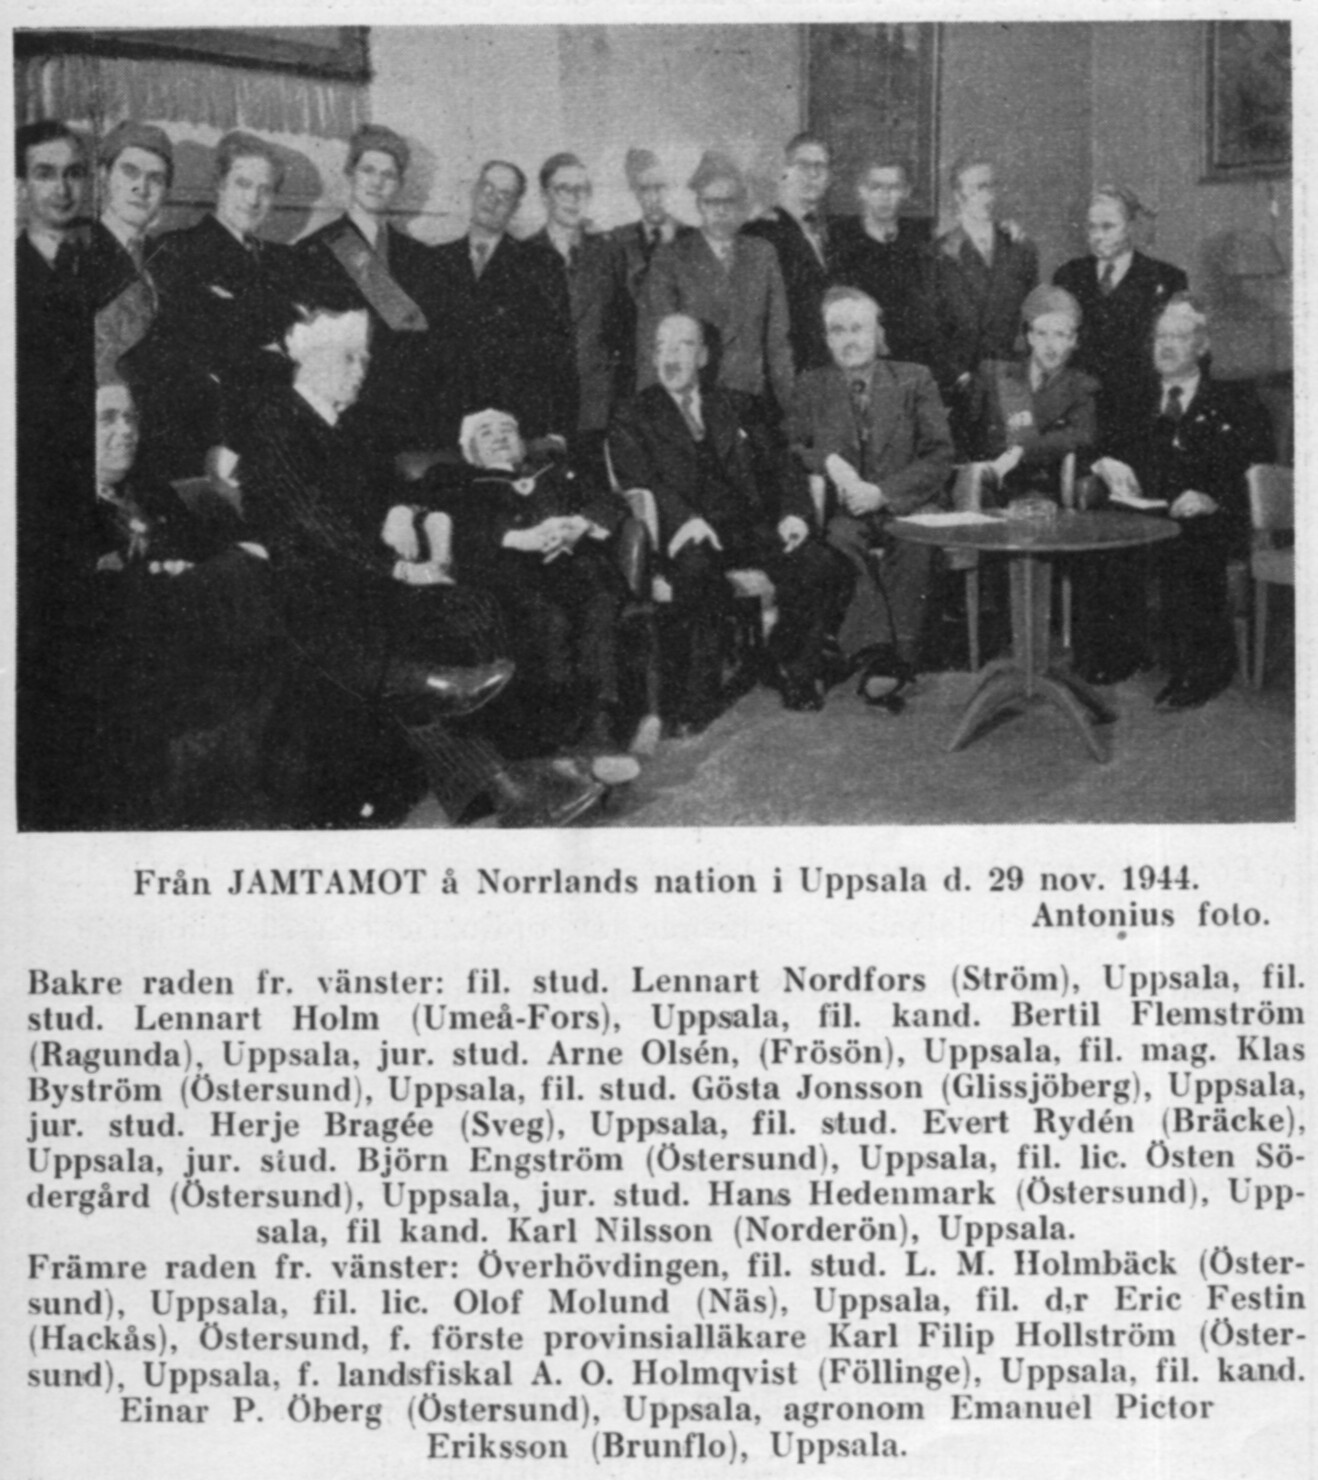 Gruppfoto vid Motet i Gula salongen  Norrlands nation den 29/11 1944